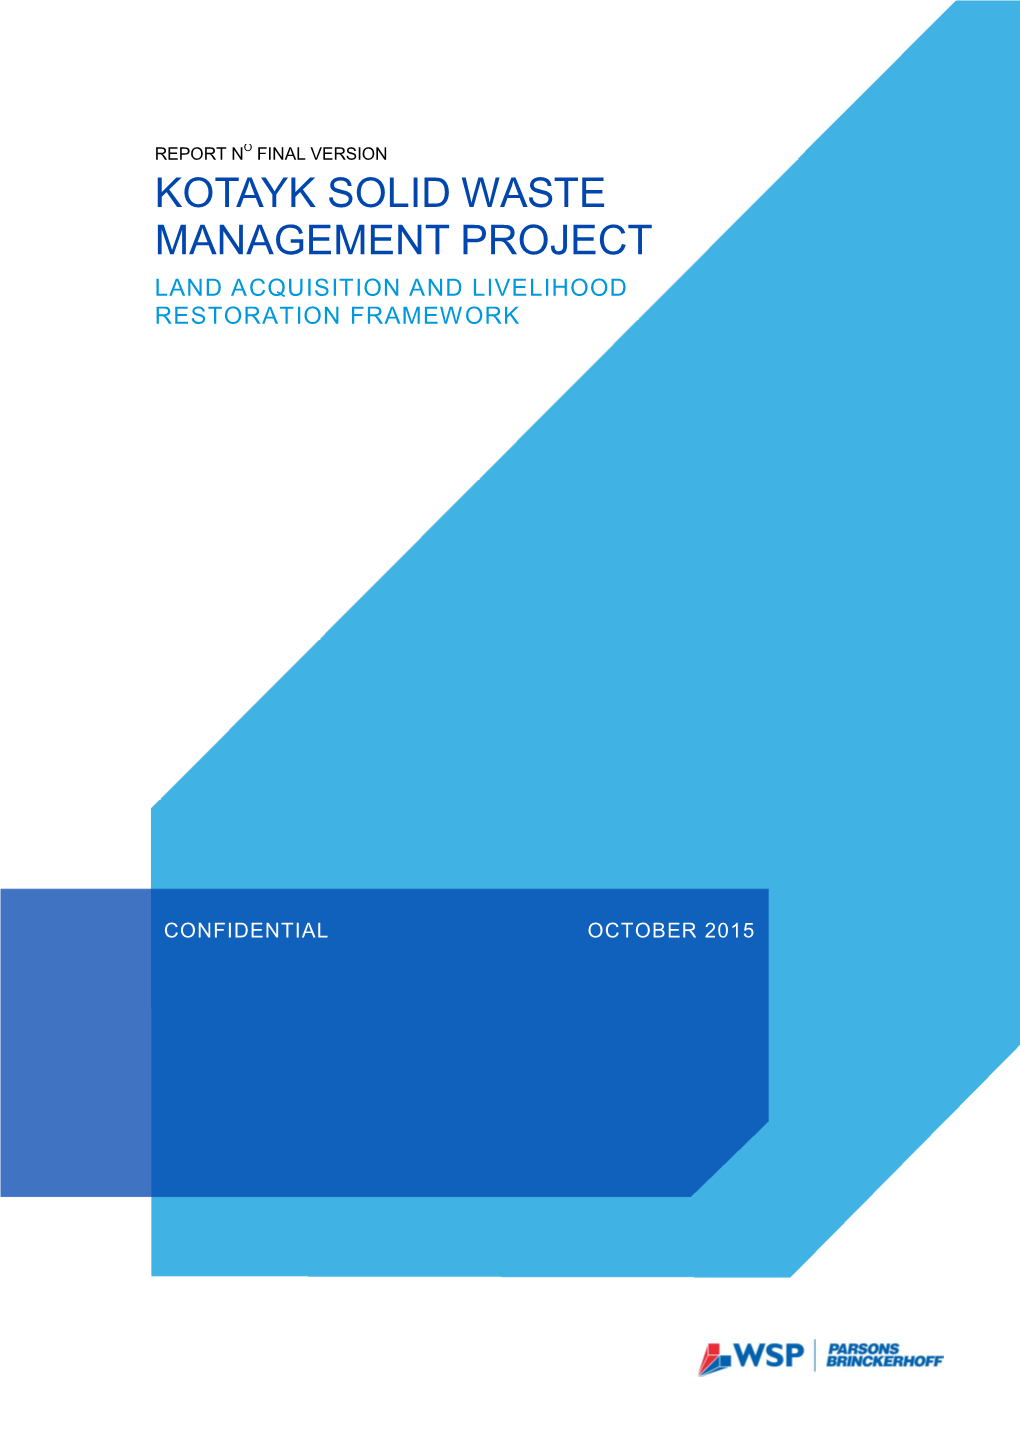 Kotayk Solid Waste Management Project Land Acquisition and Livelihood Restoration Framework